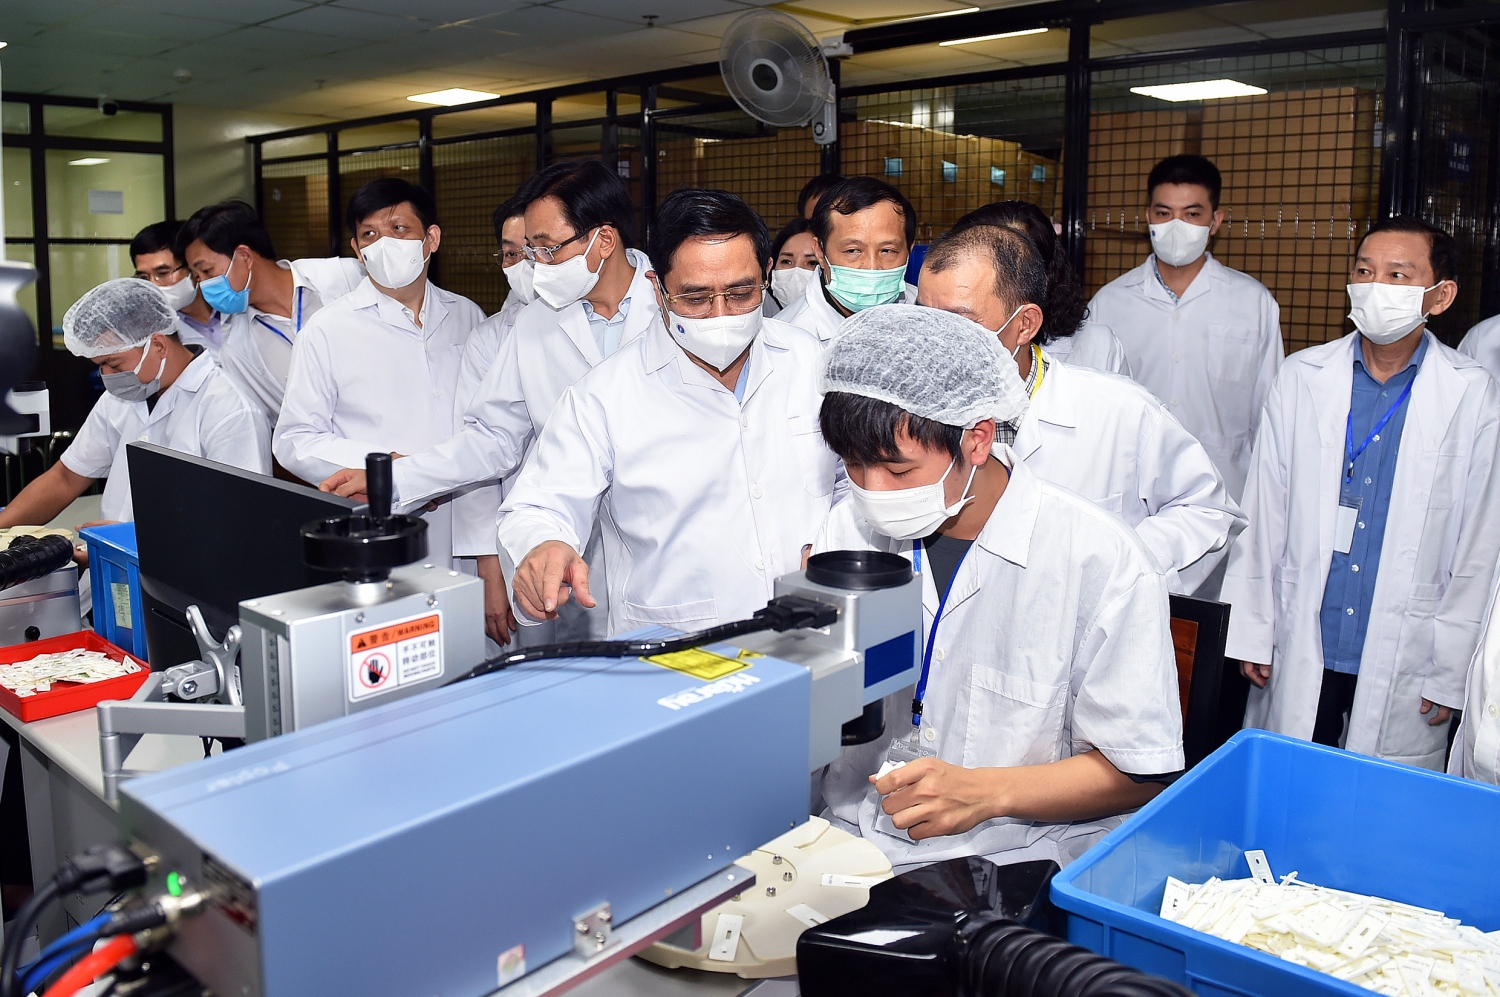 Thủ tướng đã tới thăm và làm việc tại Công ty Medicon (xã An Khánh, huyện Hoài Đức, Hà Nội) - chuyên sản xuất test thử (xét nghiệm nhanh) phục vụ các nhu cầu y học -Ảnh: VGP/Nhật Bắc